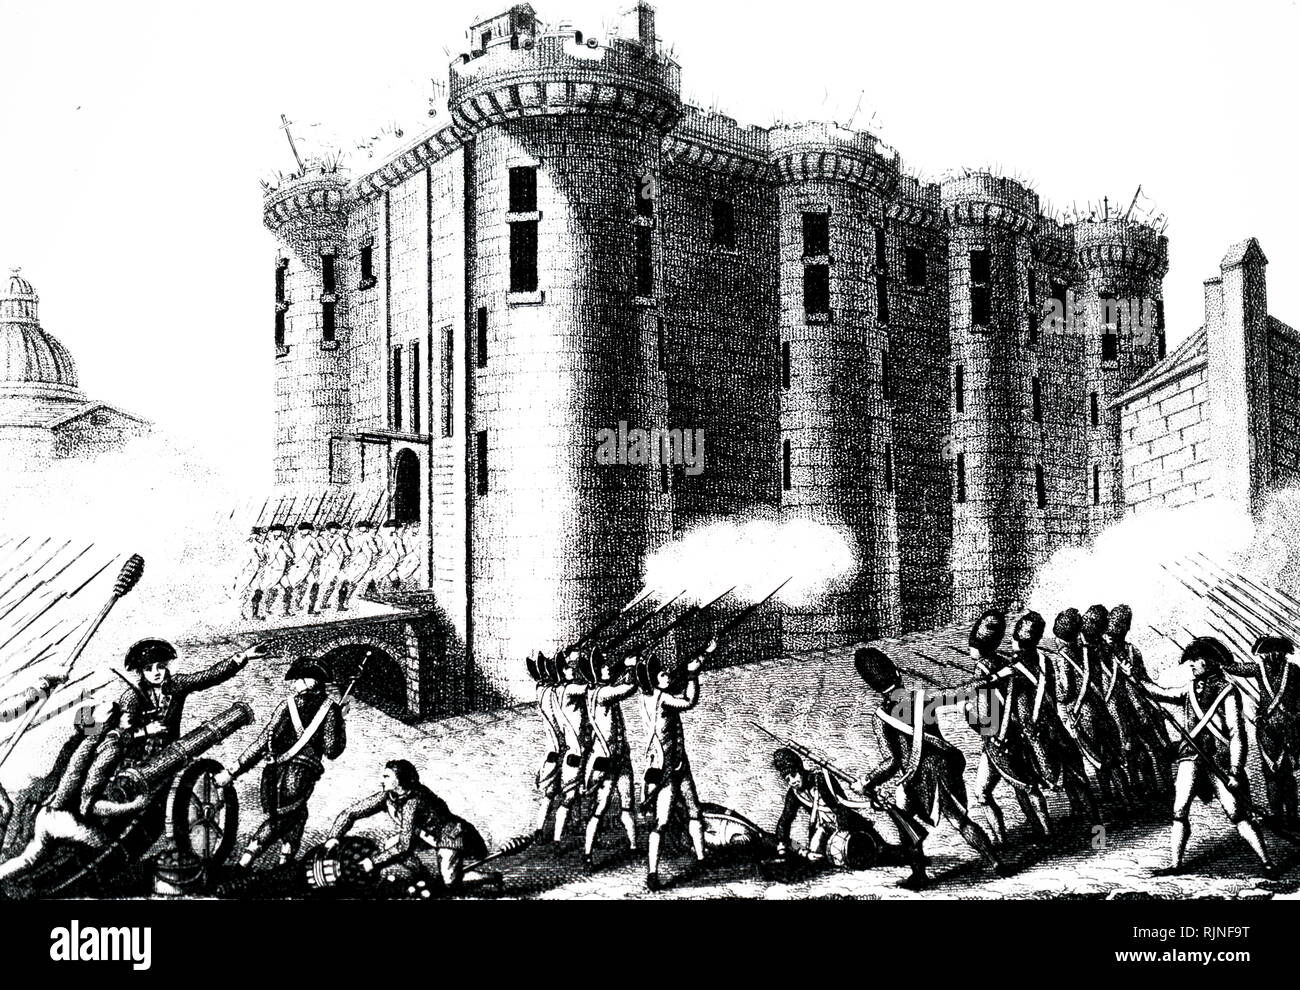 Ein kupferstich mit der Darstellung der Sturm auf die Bastille - 14. Juli 1789. Soldaten Angriff der ersten Zivilisten erlaubt wurde. Stockfoto